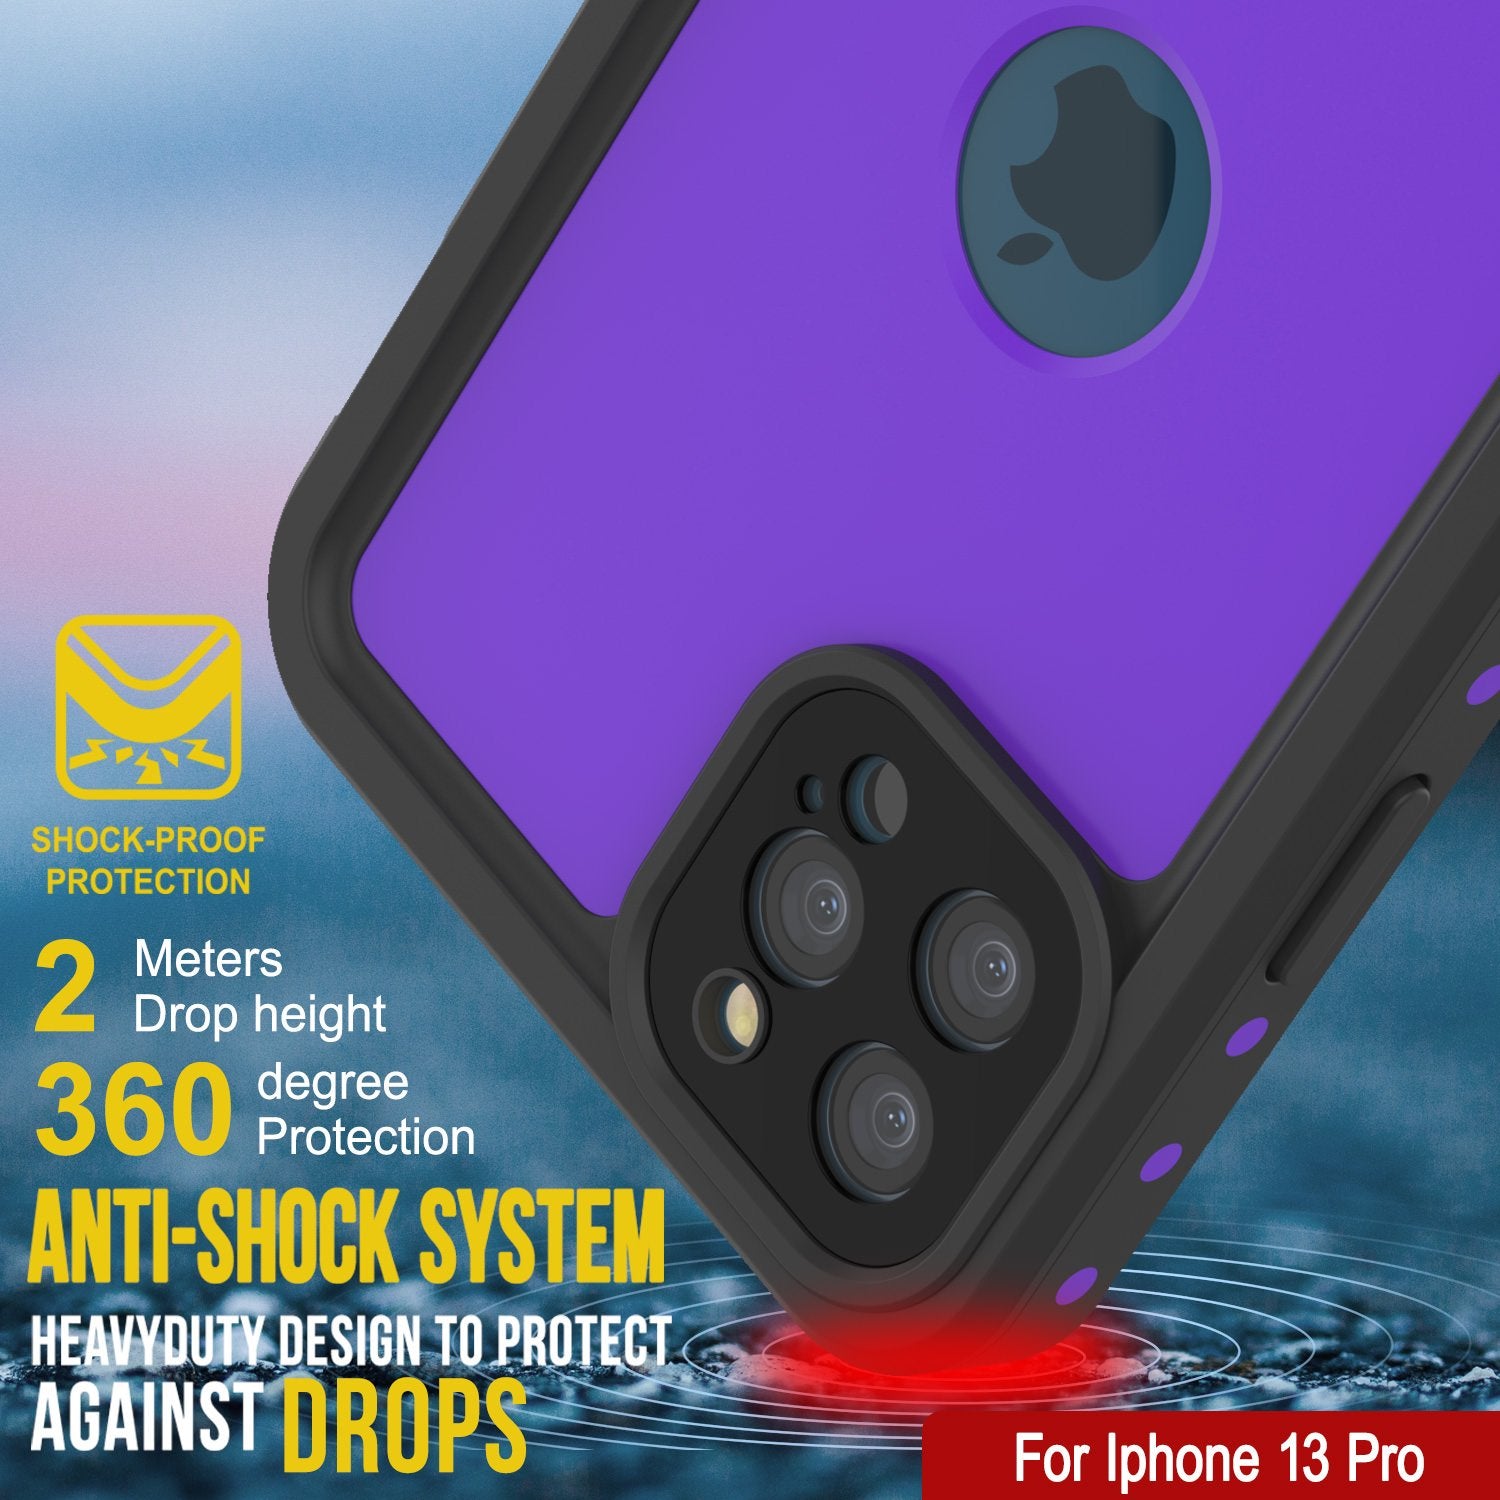 iPhone 13 Pro Waterproof IP68 Case, Punkcase [Purple] [StudStar Series] [Slim Fit] [Dirtproof]